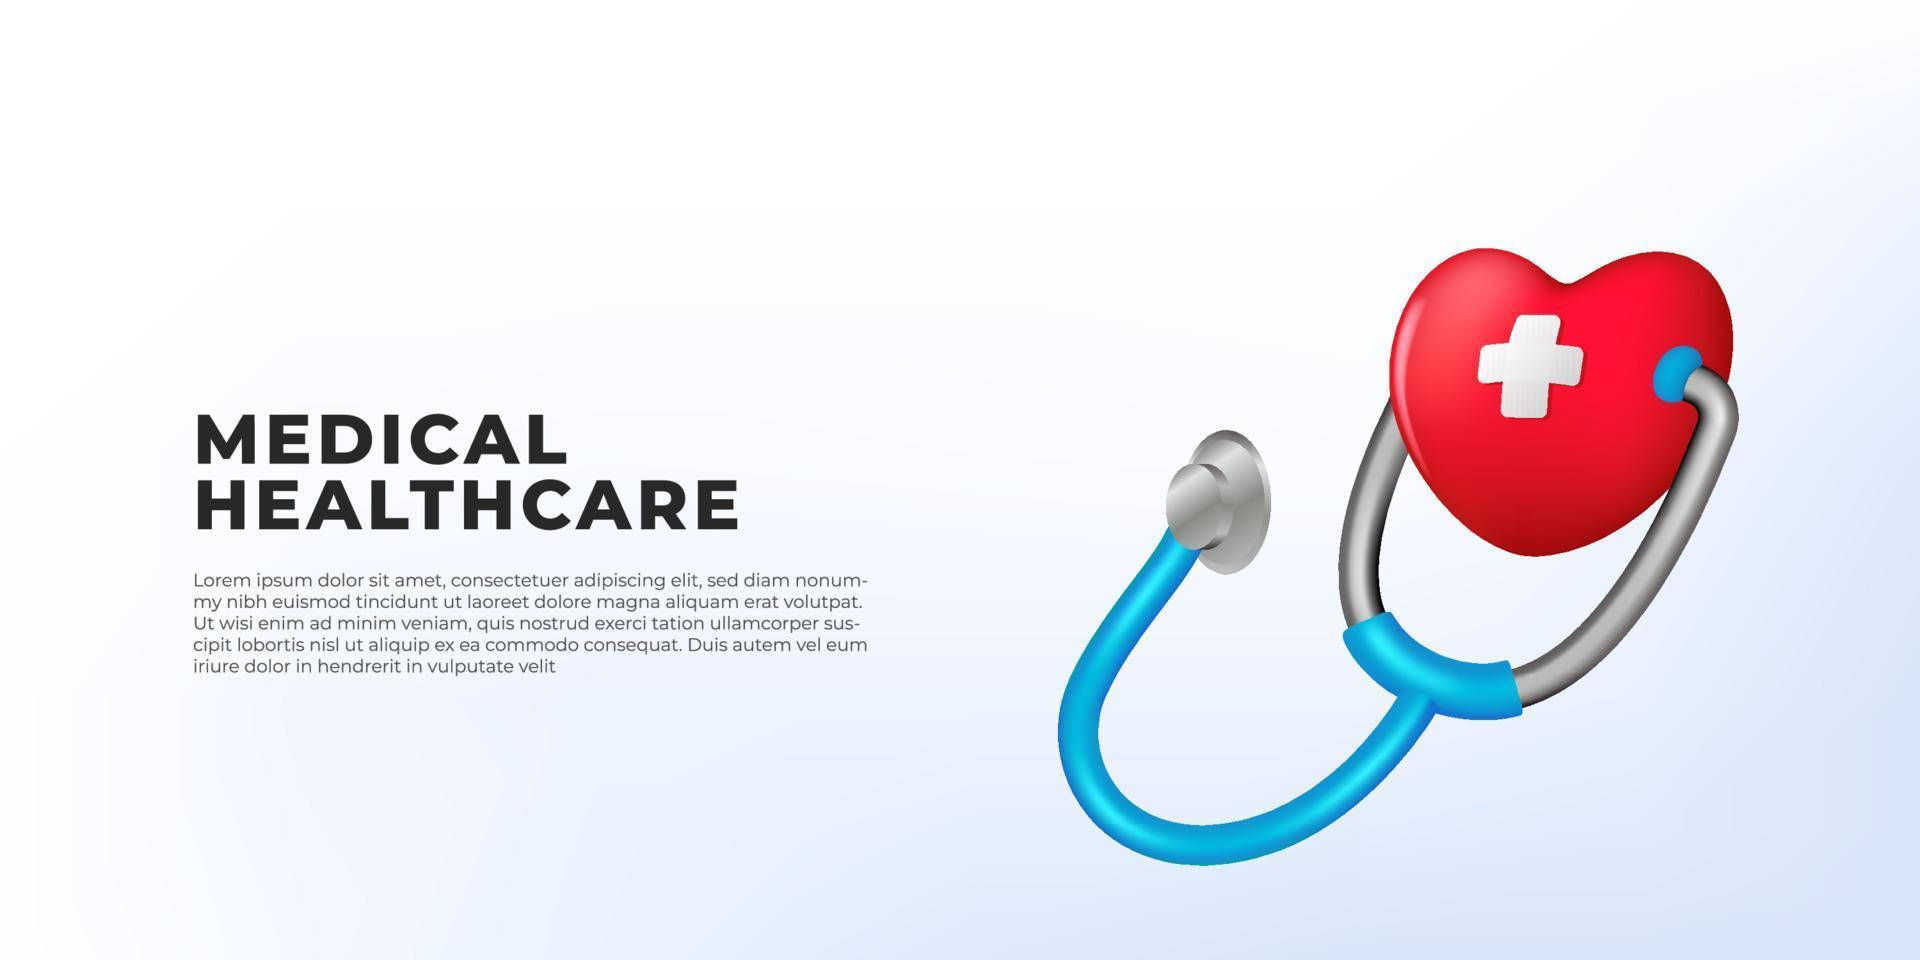 Stéthoscope de dessin animé 3d avec concept d'illustration de soins médicaux à foyer rouge pour clinique hospitalière vecteur